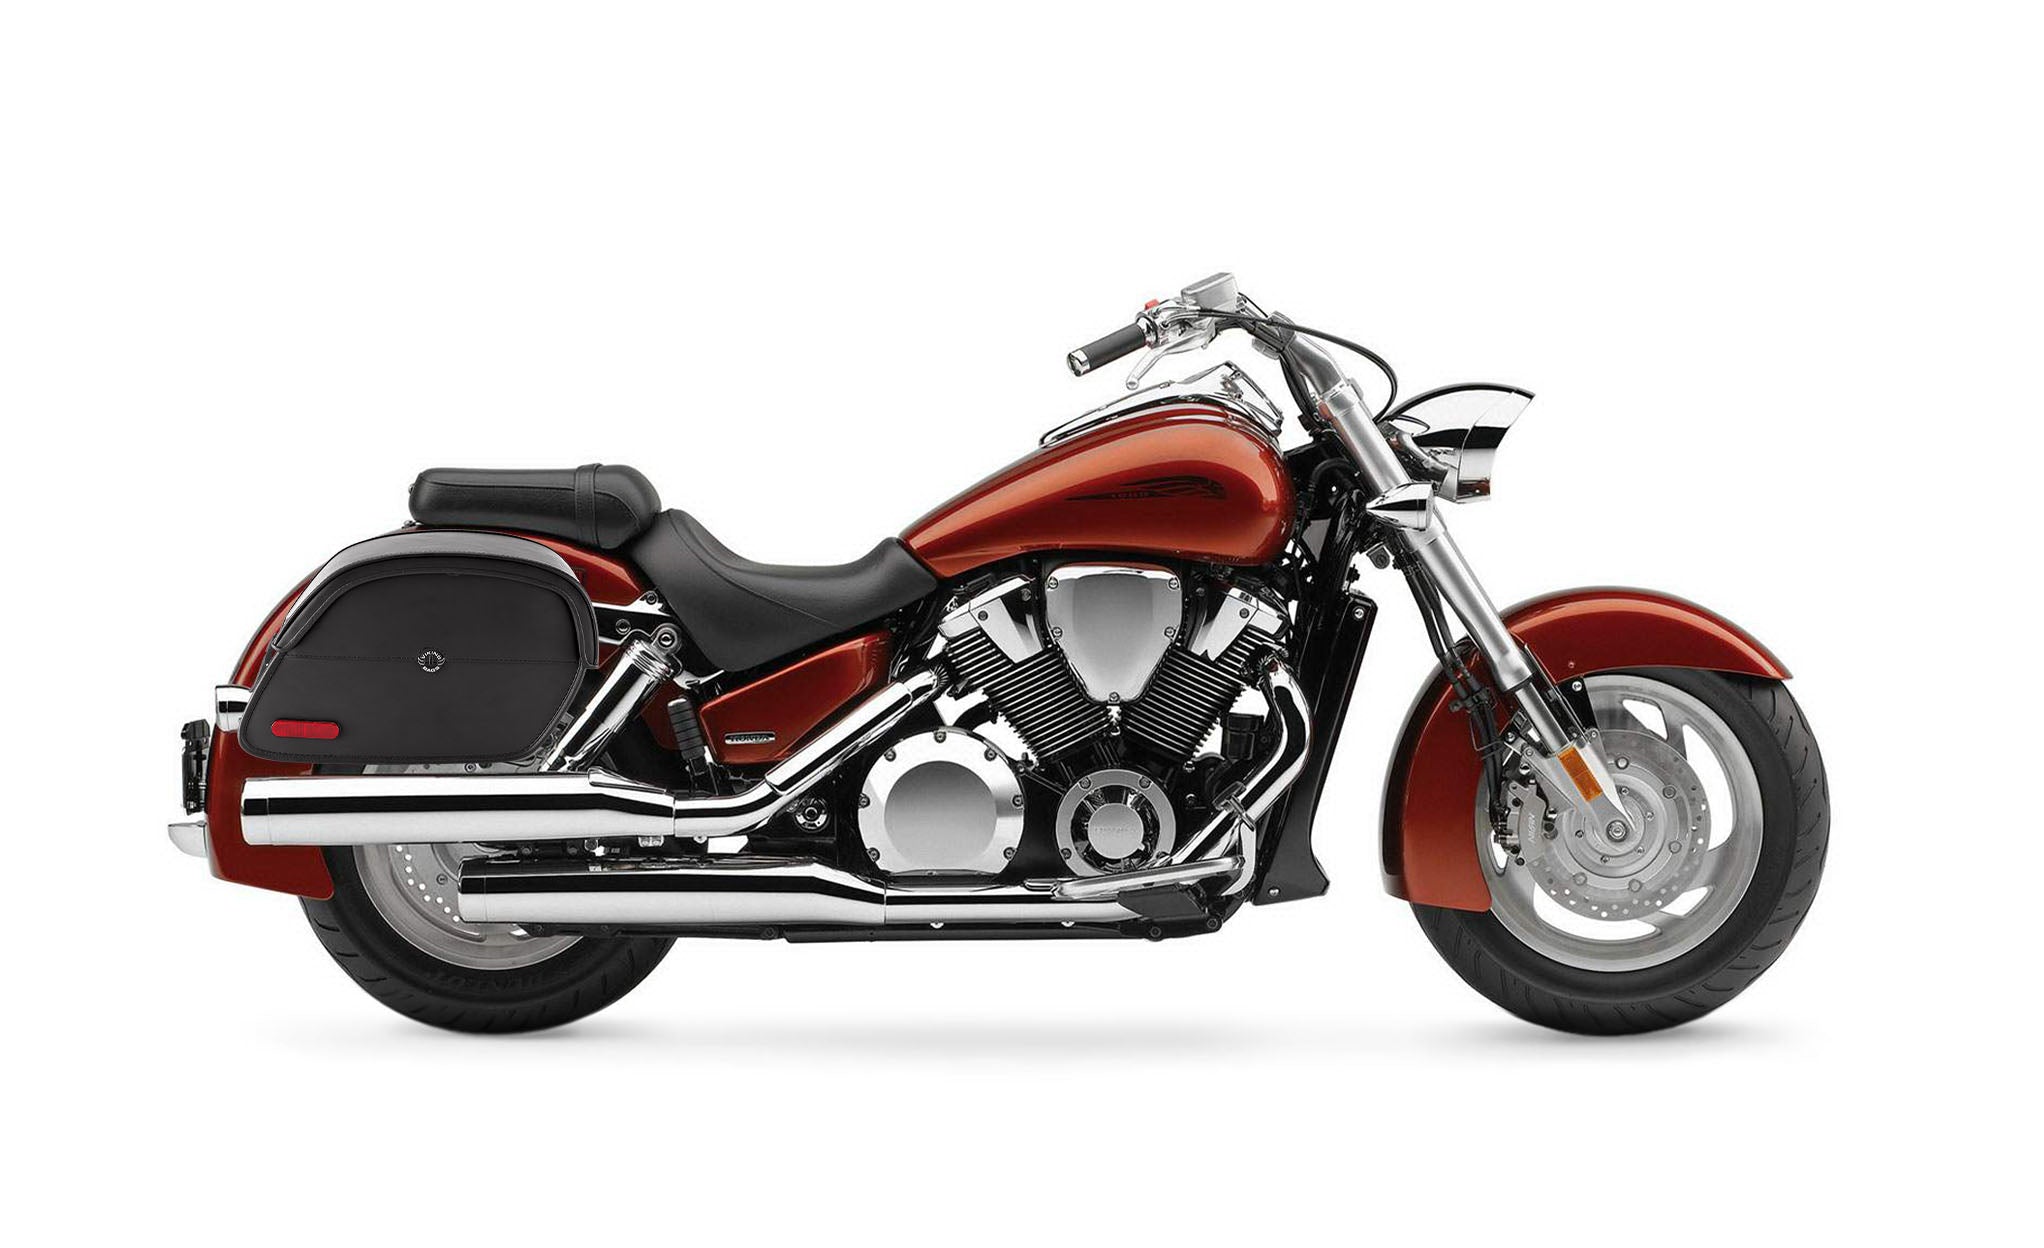 Viking California Large Honda Vtx 1800 N Leather Motorcycle Saddlebags on Bike Photo @expand